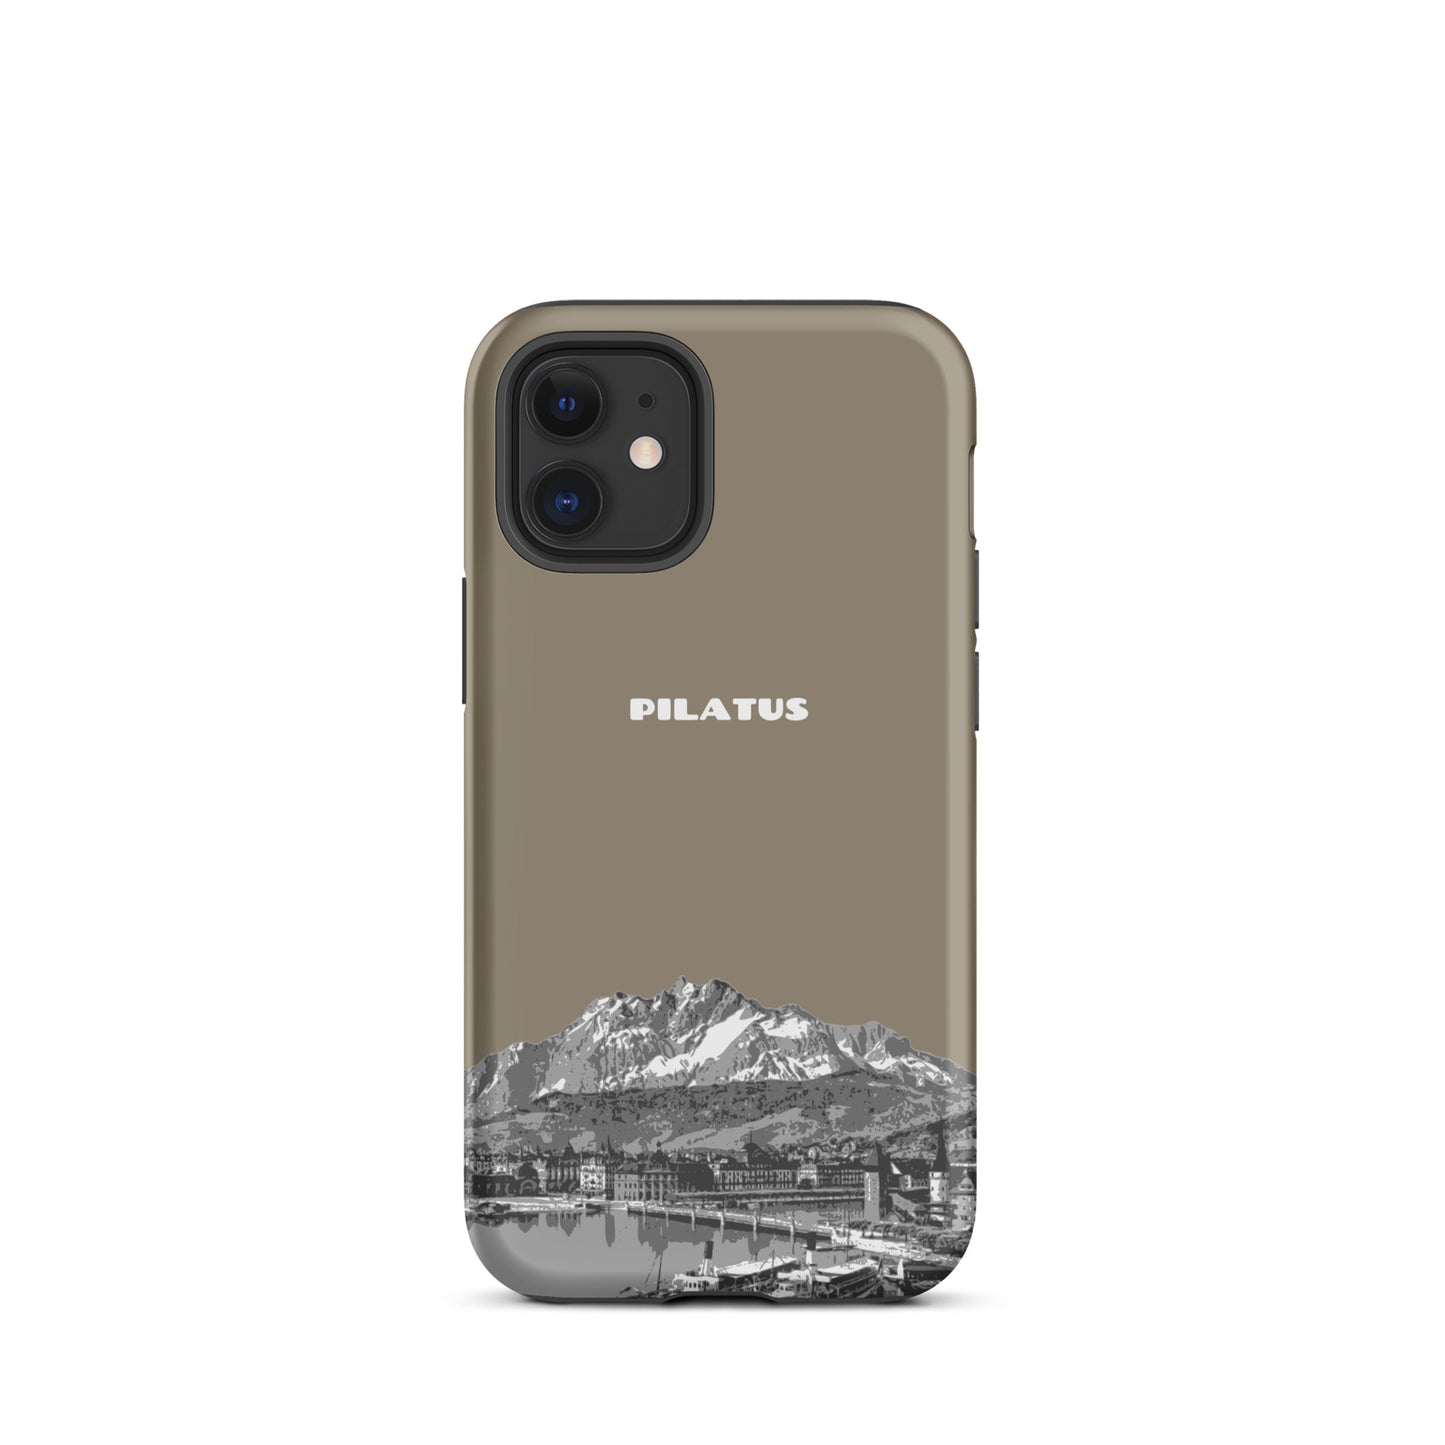 iPhone Case - Pilatus - Graubraun